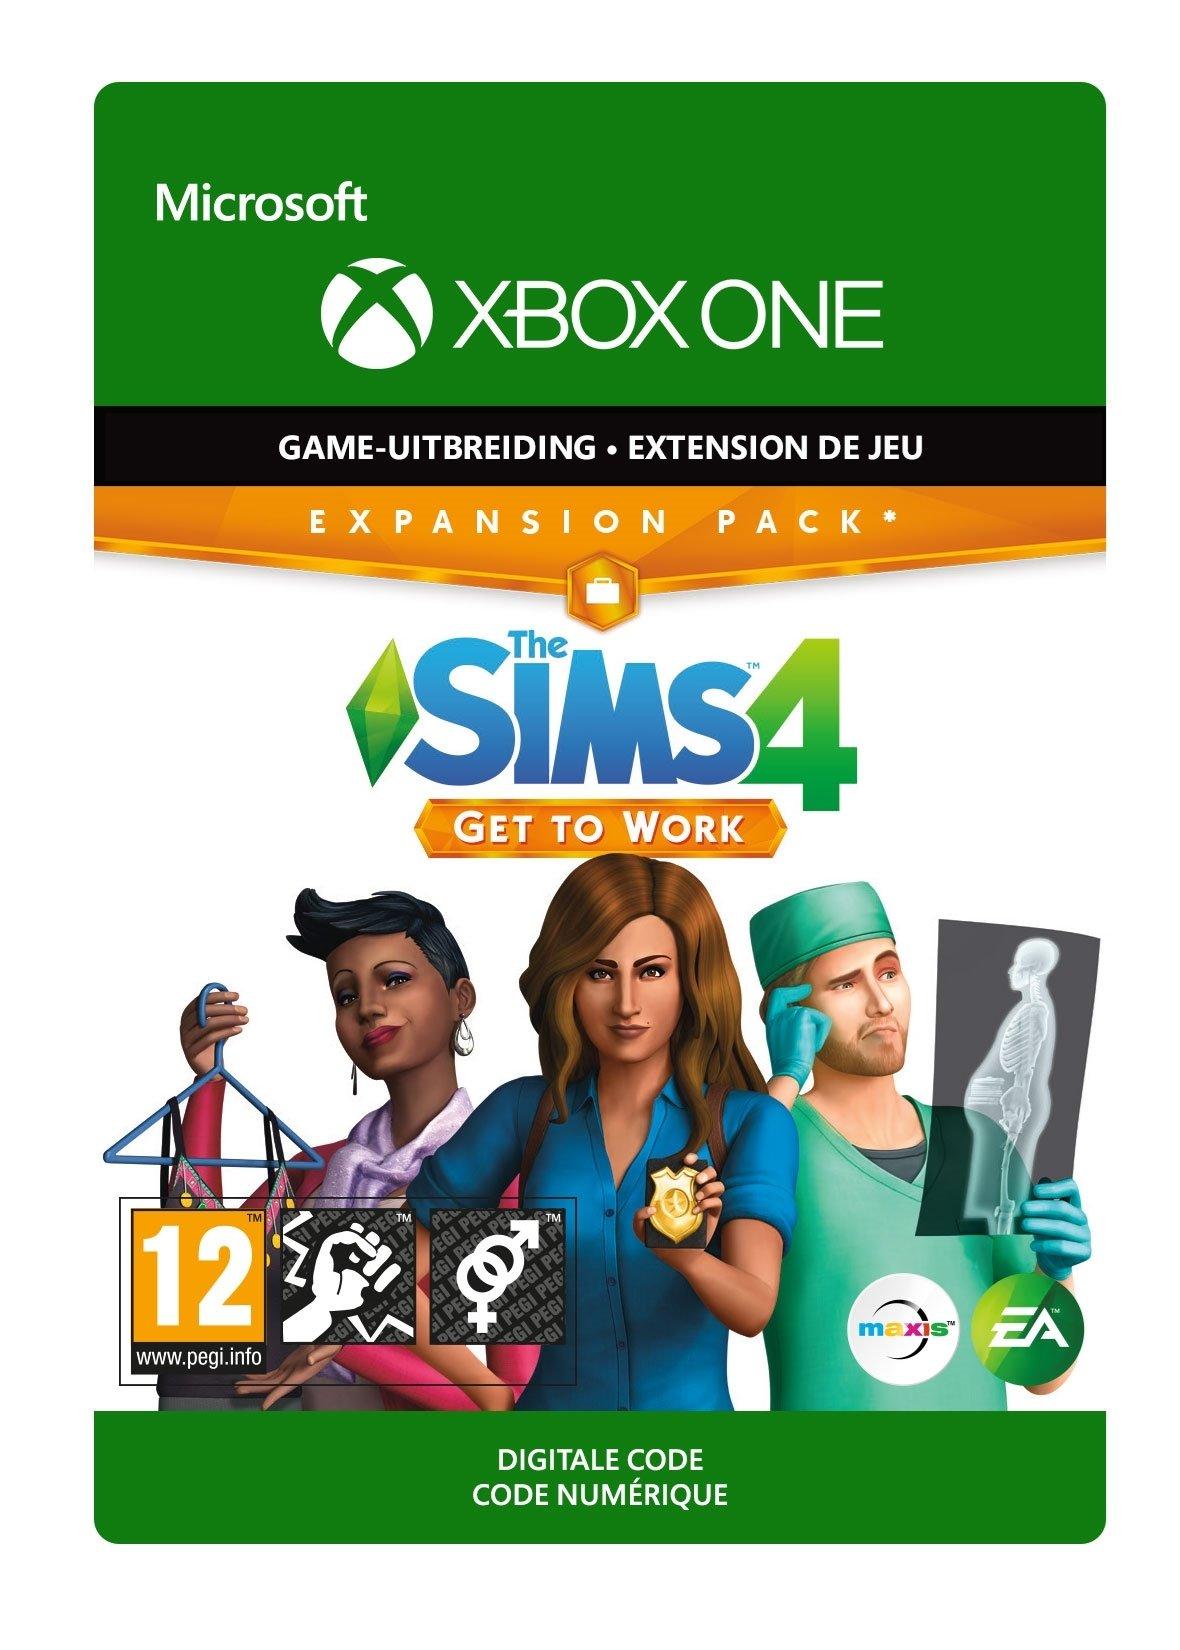 The Sims 4: Get To Work - Xbox One - Add-on | 7D4-00232 (add03c5b-7199-6b47-afd9-34fd367d46f7)